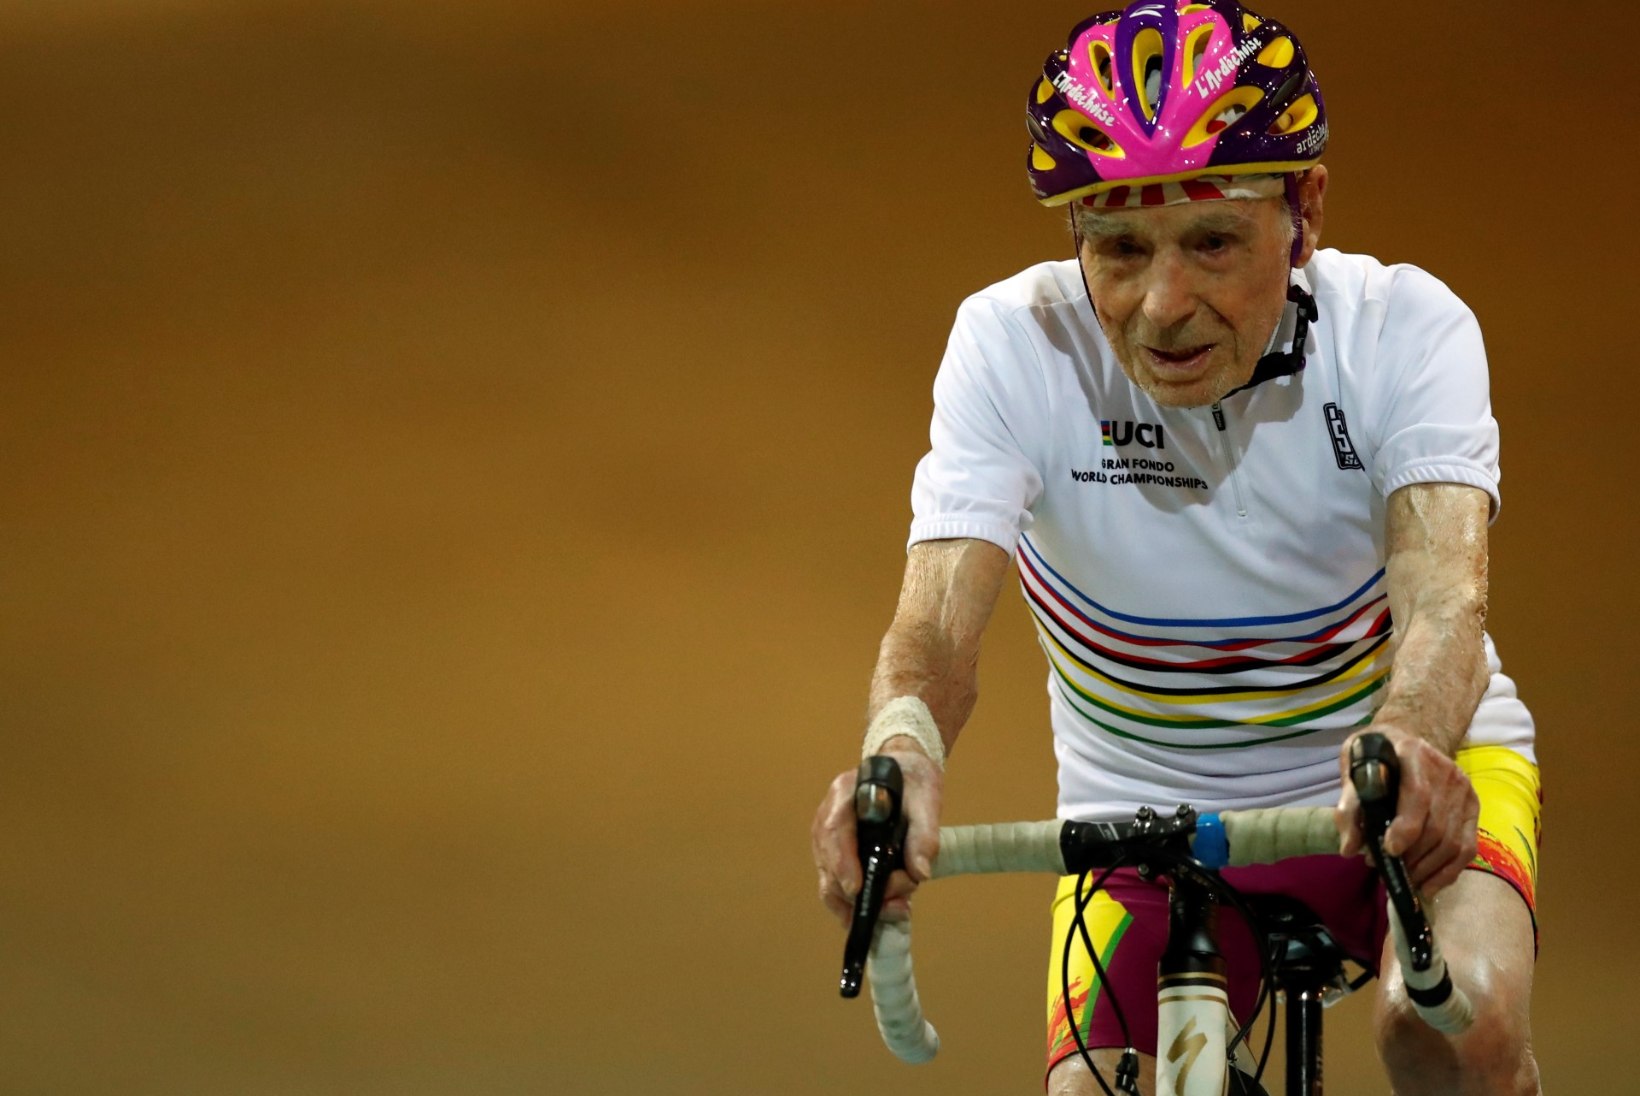 106aastane maailmarekordimees ei suuda ega taha sporti jätta